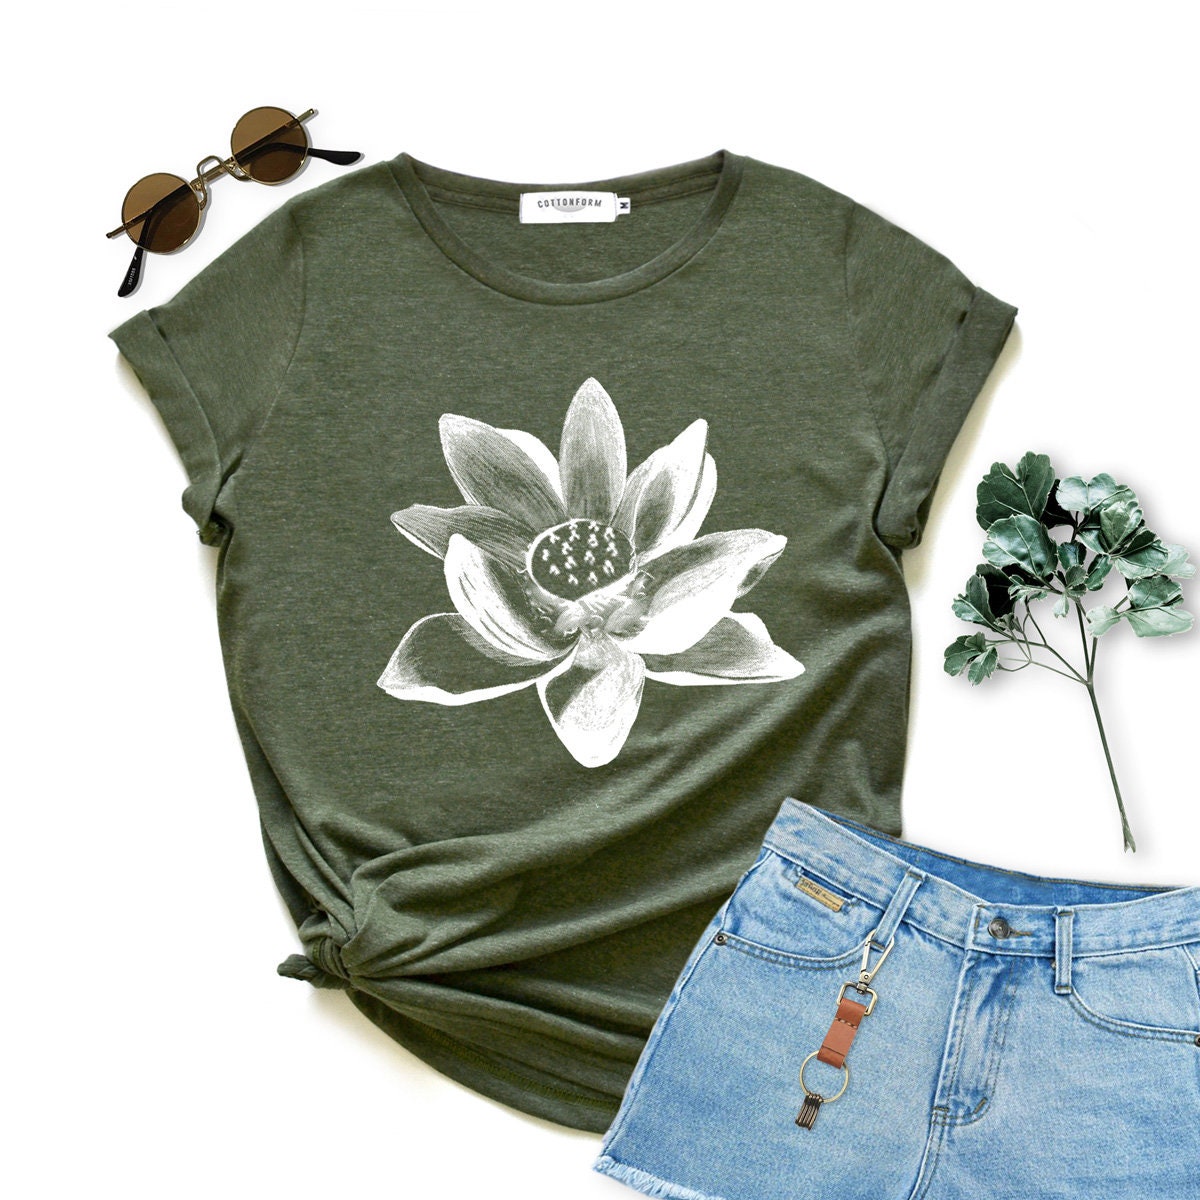 Lotus Shirt Flower Shirt Gift Woman Tshirt Birthday Gift Shirt - Etsy